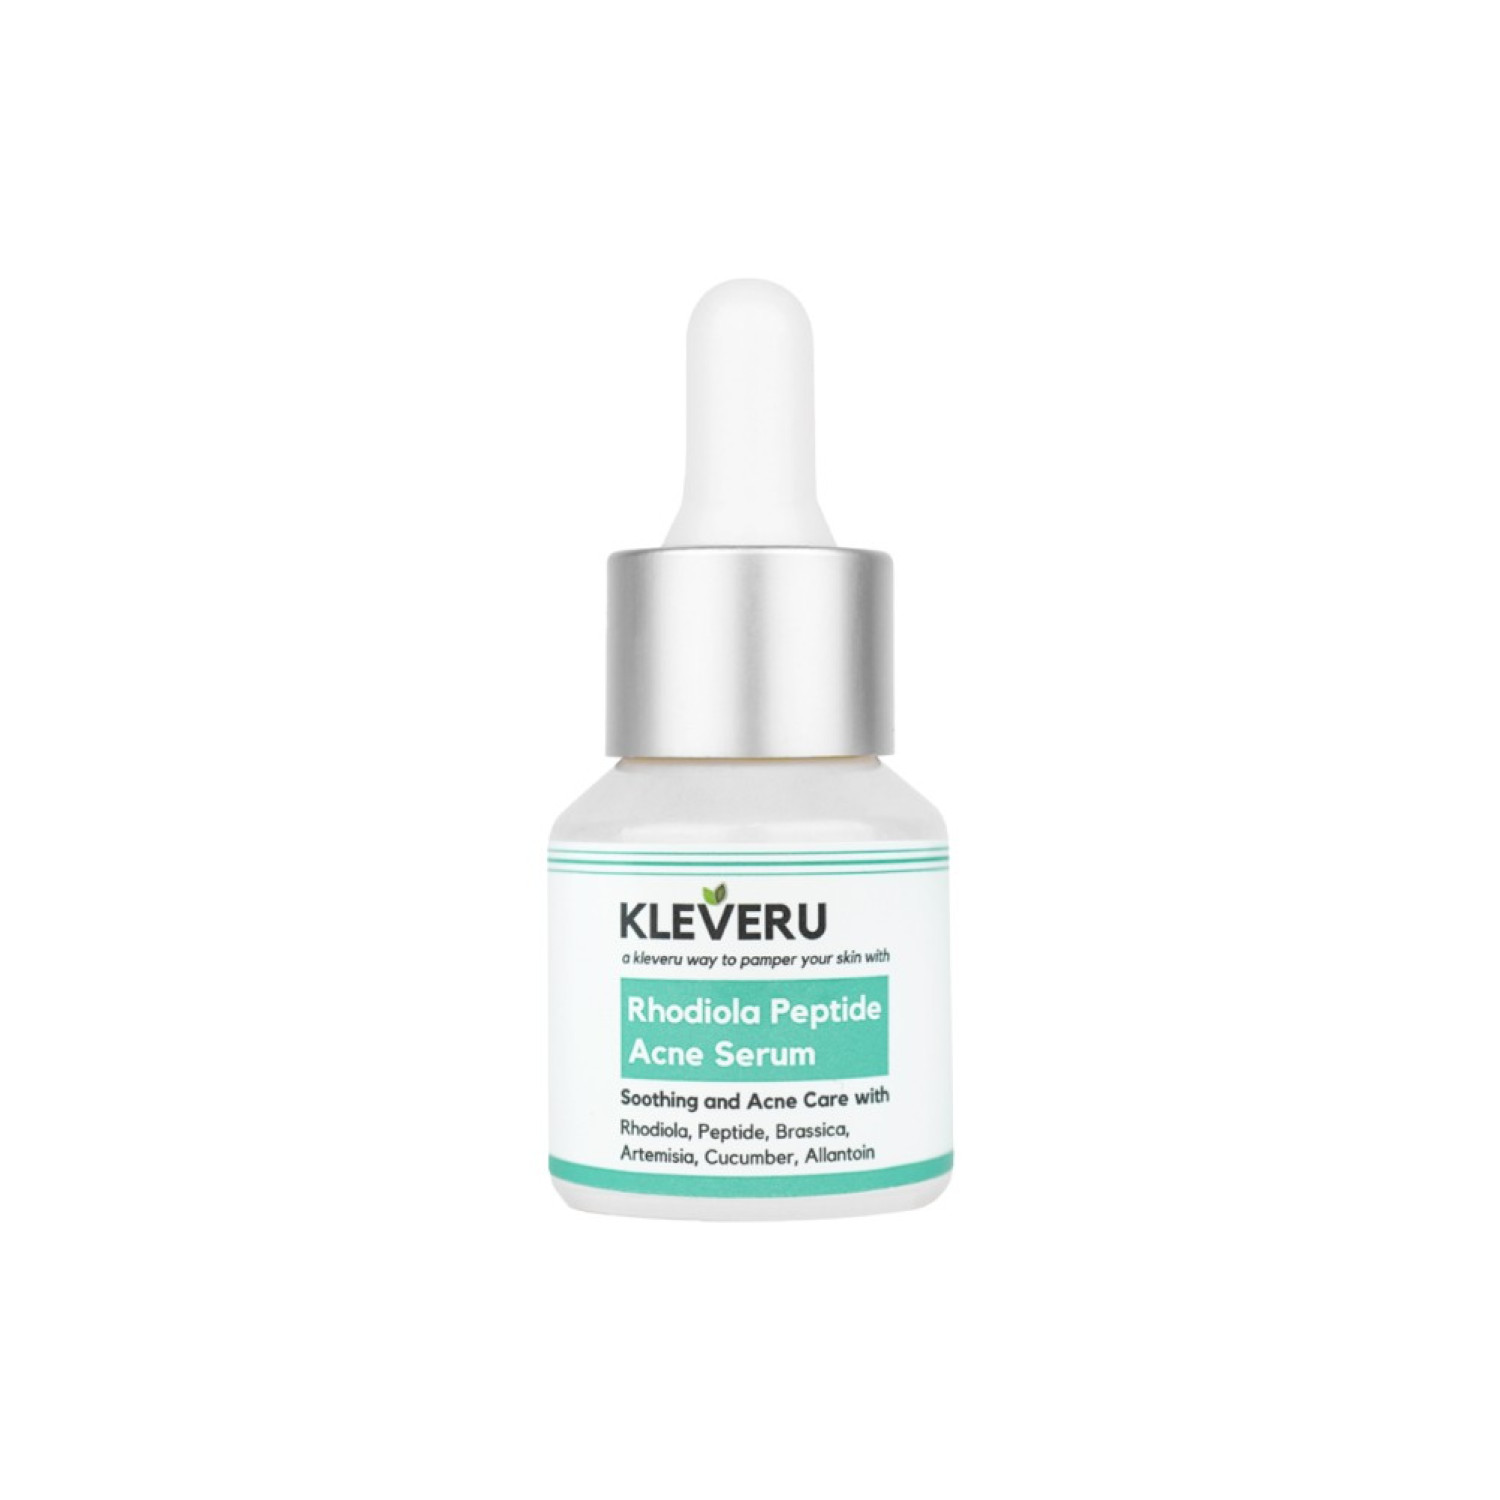 kleveru-rhodiola-peptide-acne-serum-30-ml-65d2d86cc7493.jpeg